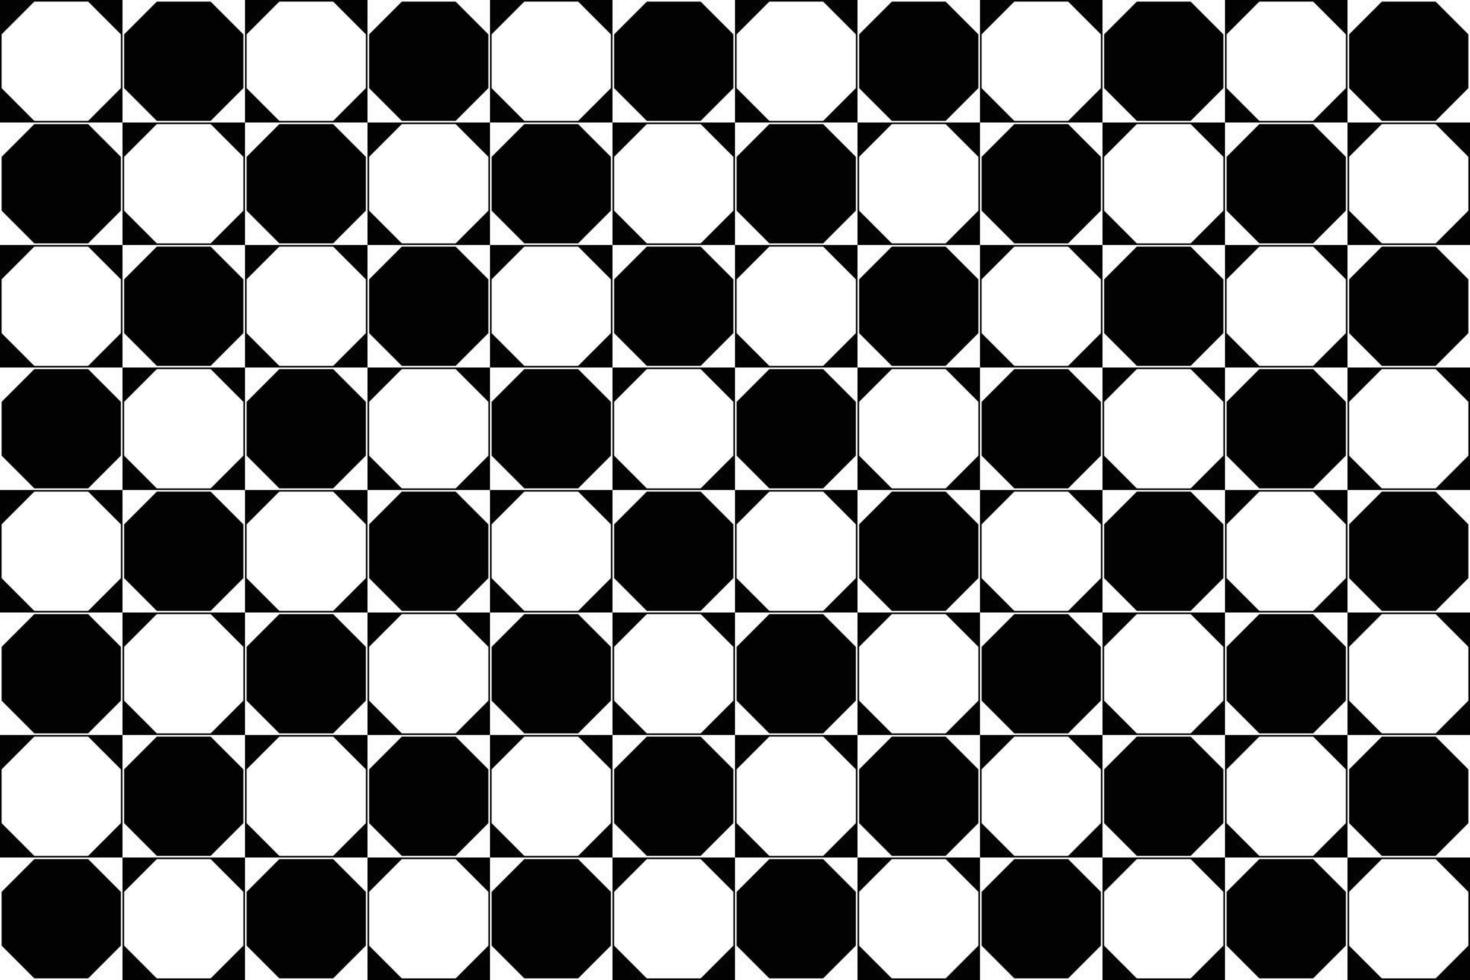 schwarz-weißer geometrischer Fliesenboden, achteckiger und quadratischer Retro-Hintergrund für Design, nahtloser Musterhintergrund. vektor